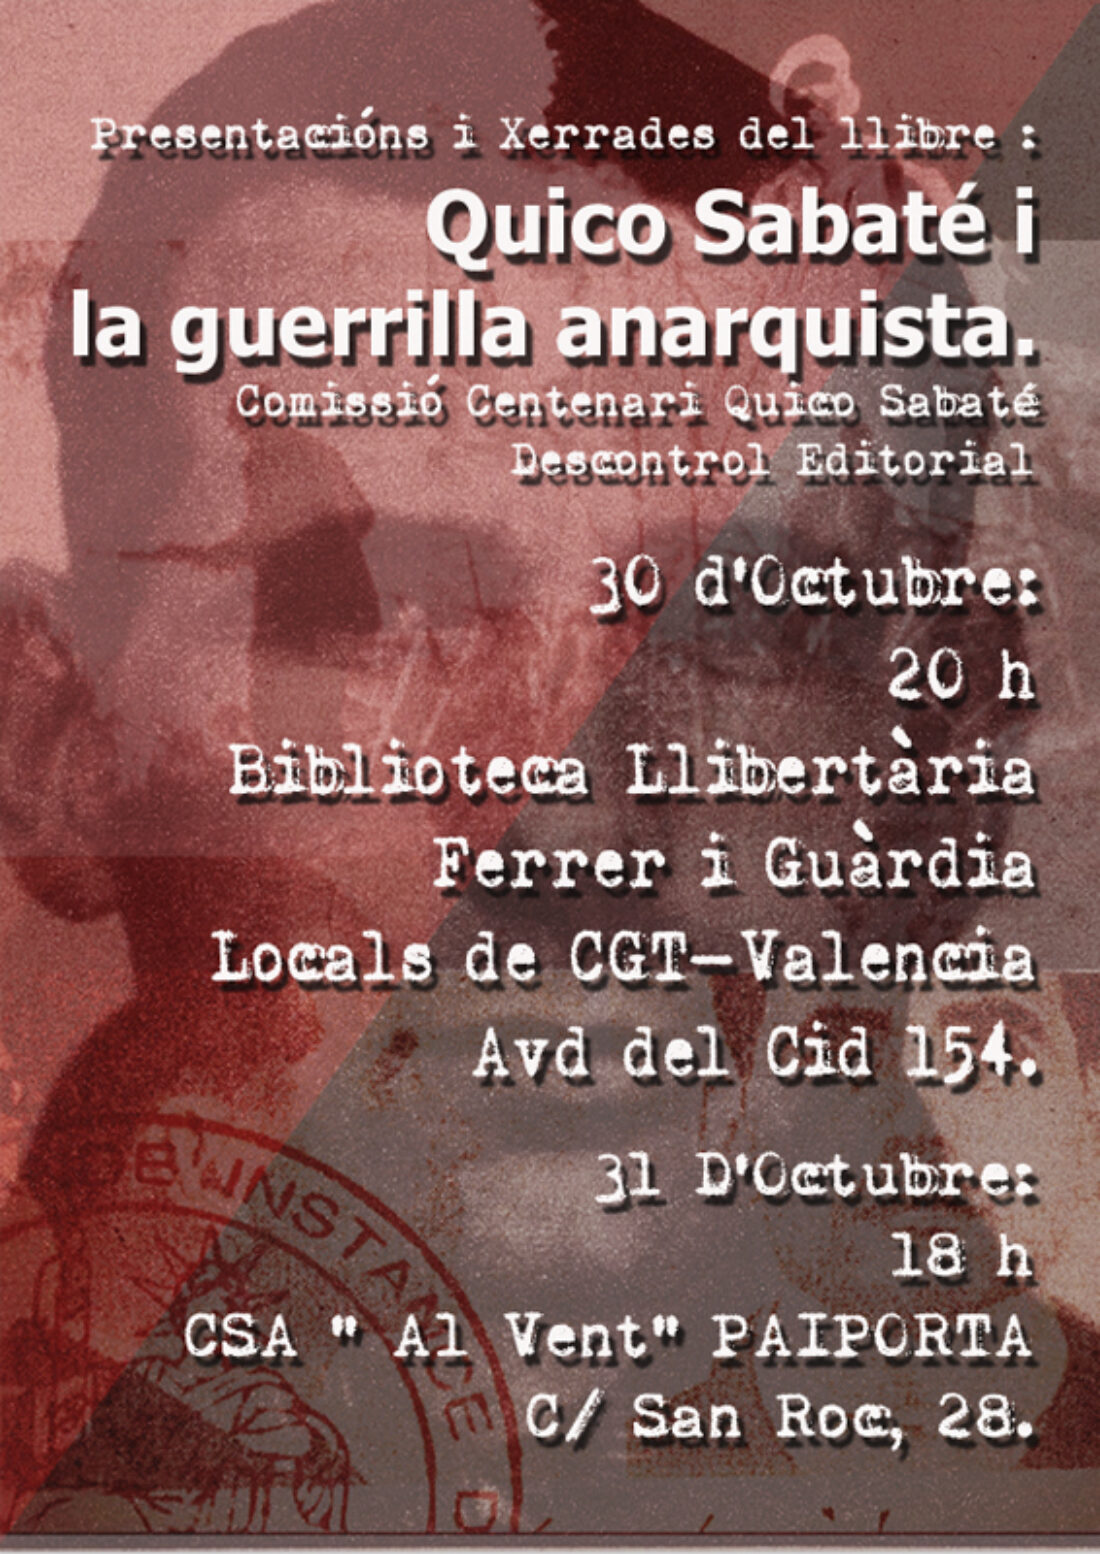 30 y 31-o: Presentaciones y charlas del libro «Quico Sabaté i la guerrilla anarquista»